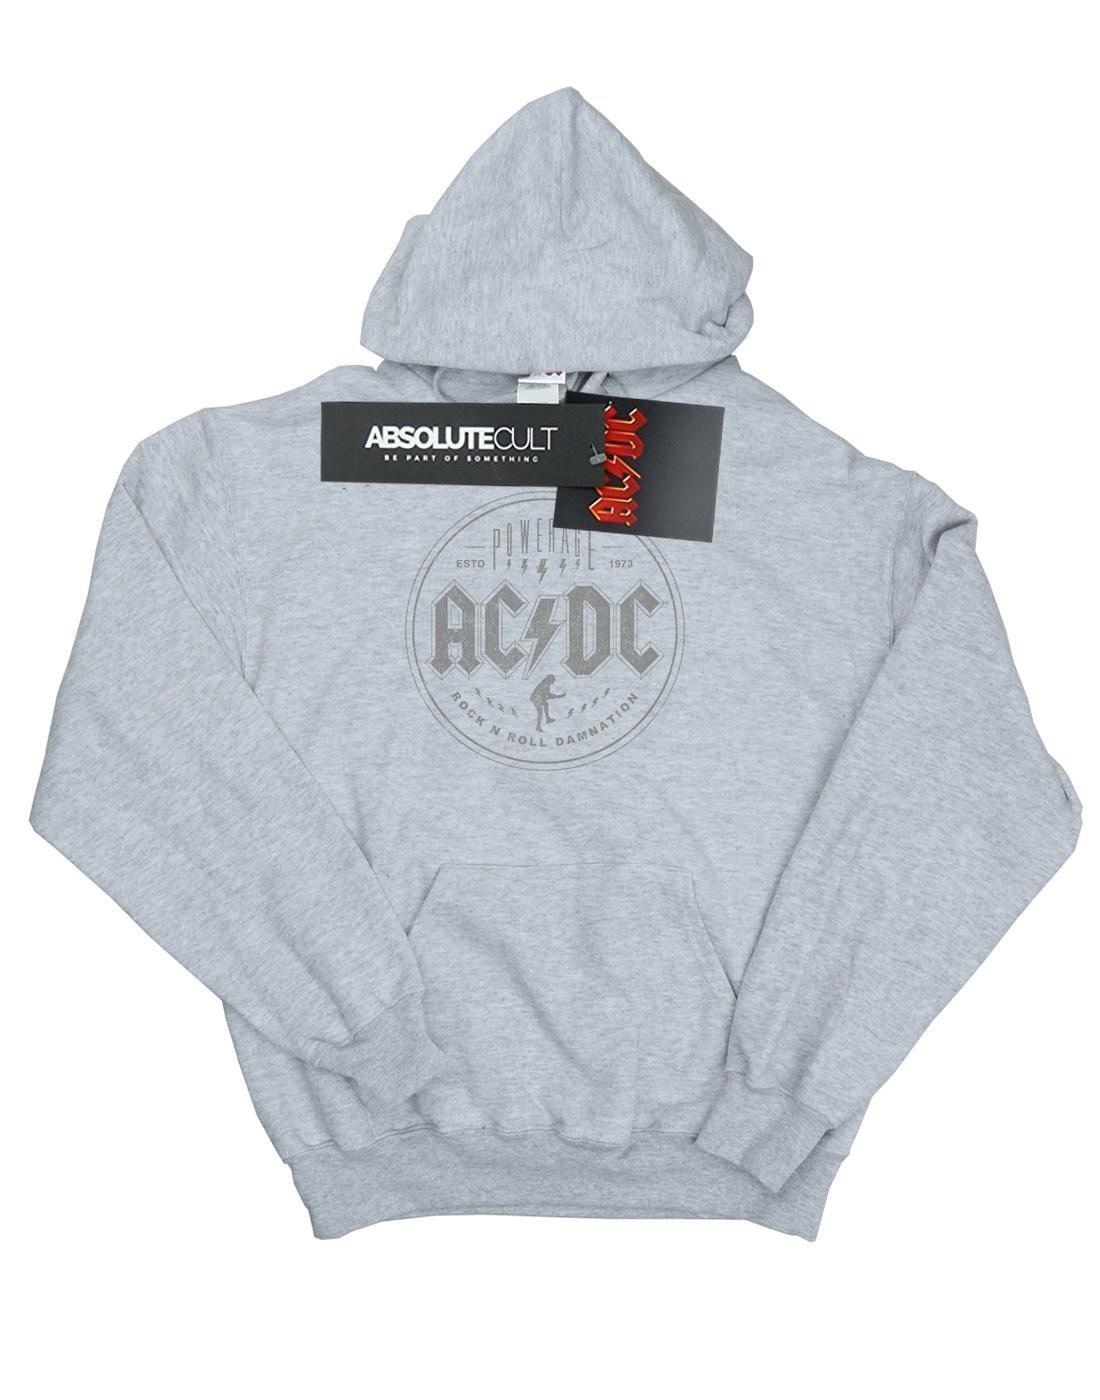 Acdc Rock N Roll Damnation Black Kapuzenpullover Jungen Grau 152-158 von AC/DC